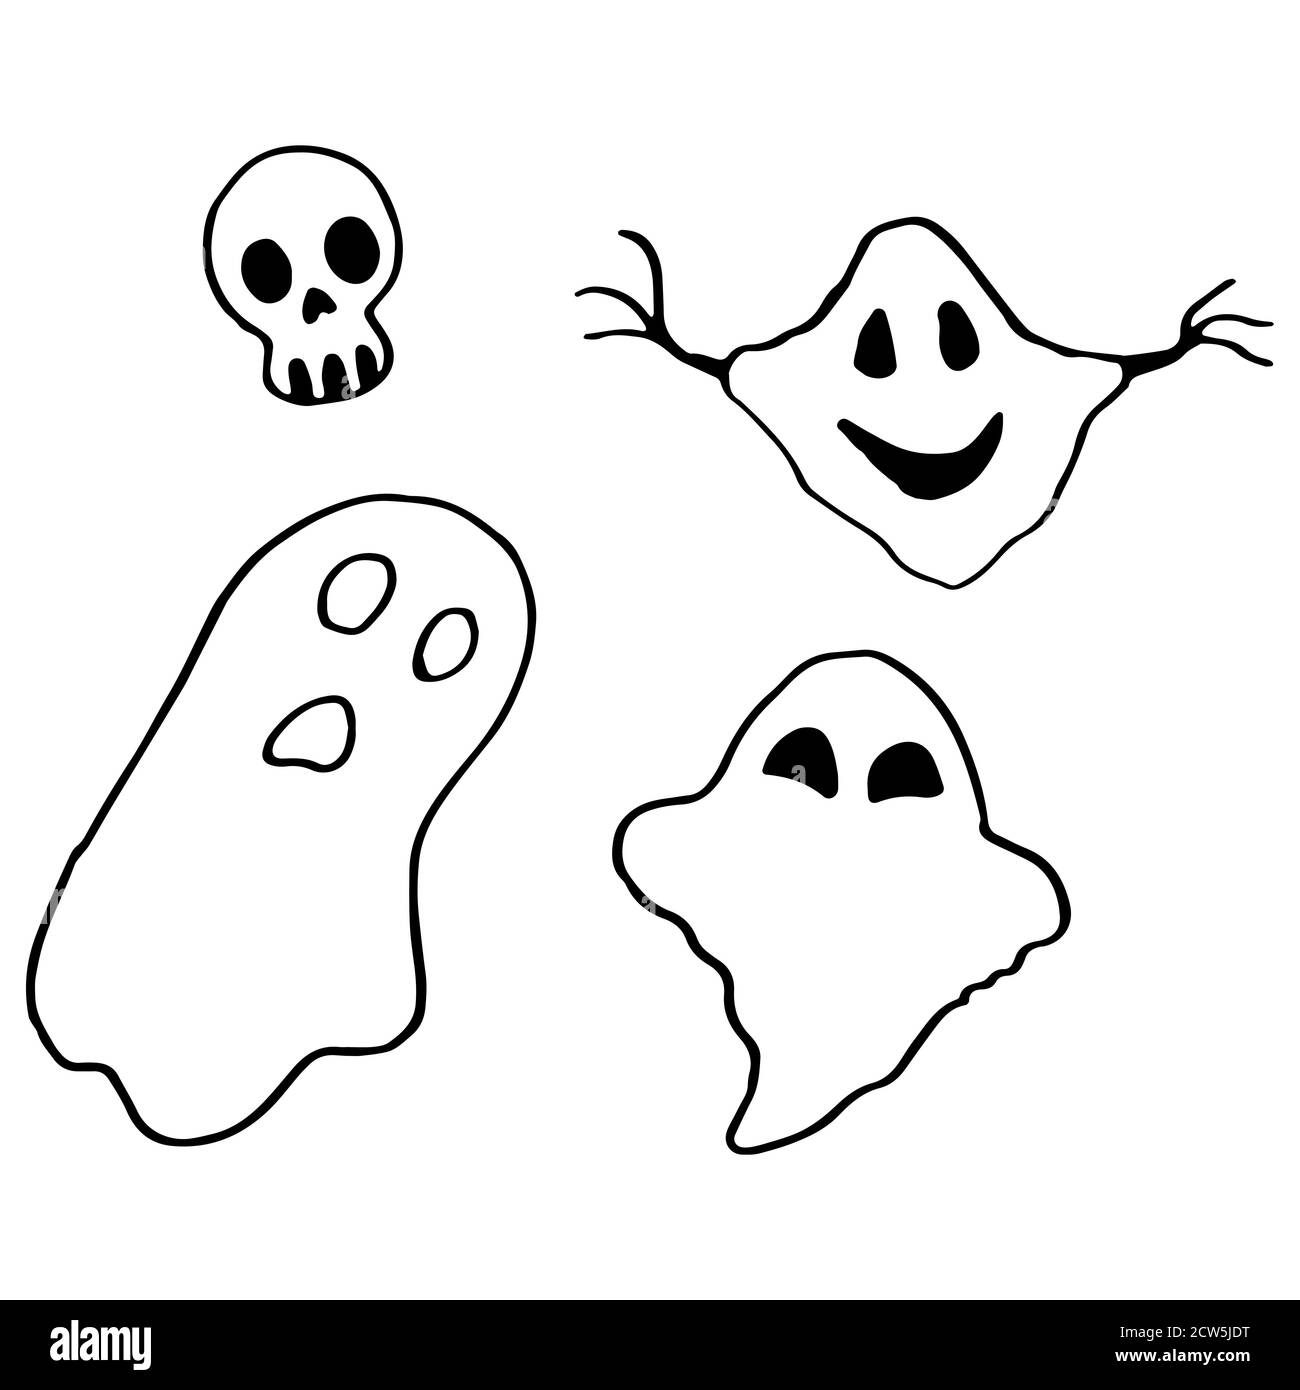 Halloween Geister Symbol auf weißen isolierten Hintergrund gesetzt. Totenkopf Symbol für Einladung oder Geschenkkarte, Notizbuch, Badetuch, Sammelalbum. Telefontasche oder Tuch PR Stock Vektor